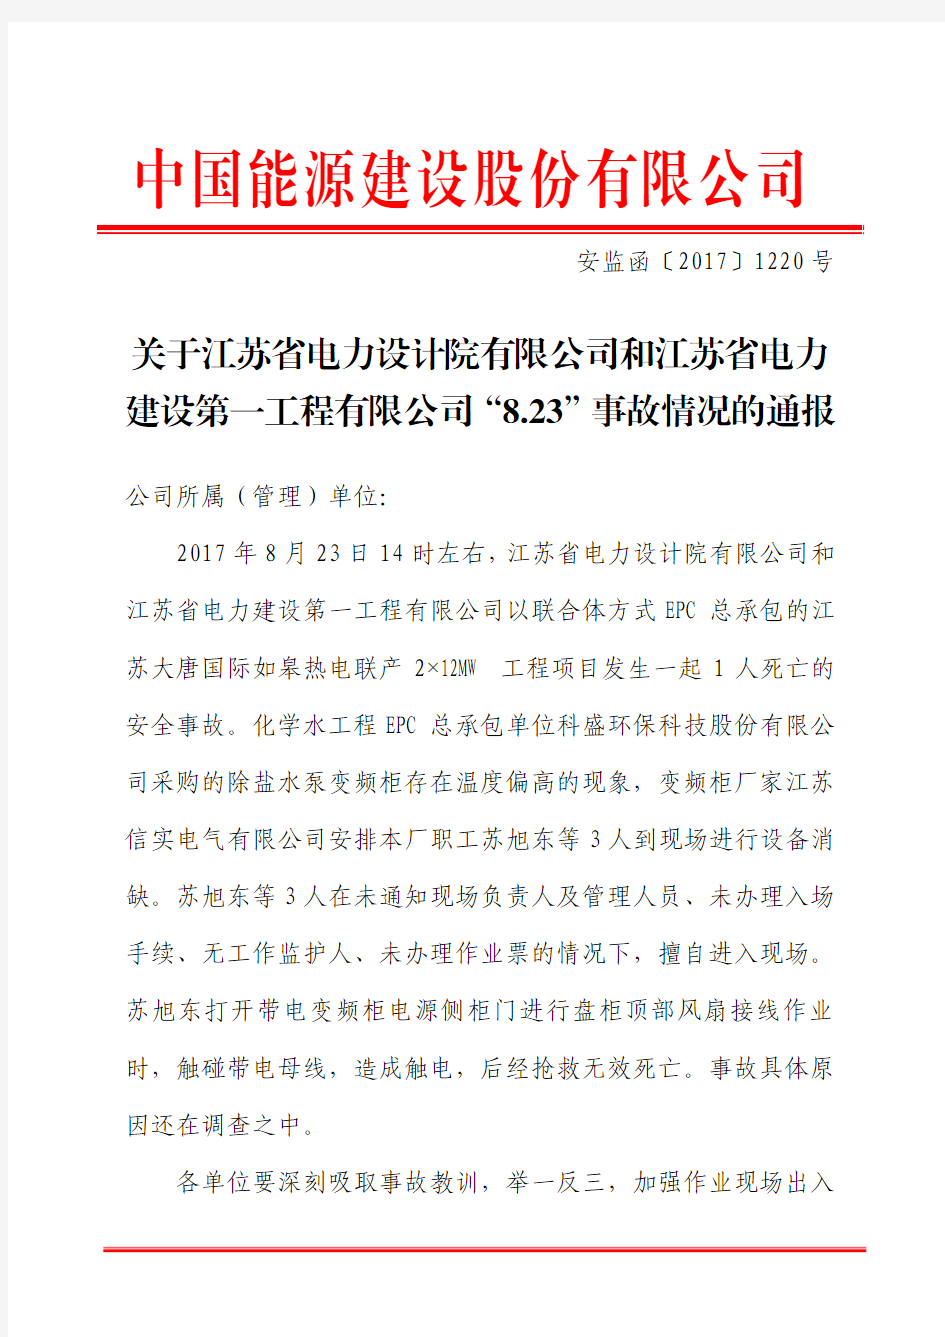 关于江苏省电力设计院有限公司和江苏省电力建设第一工程有限公司“8.23”事故情况的通报